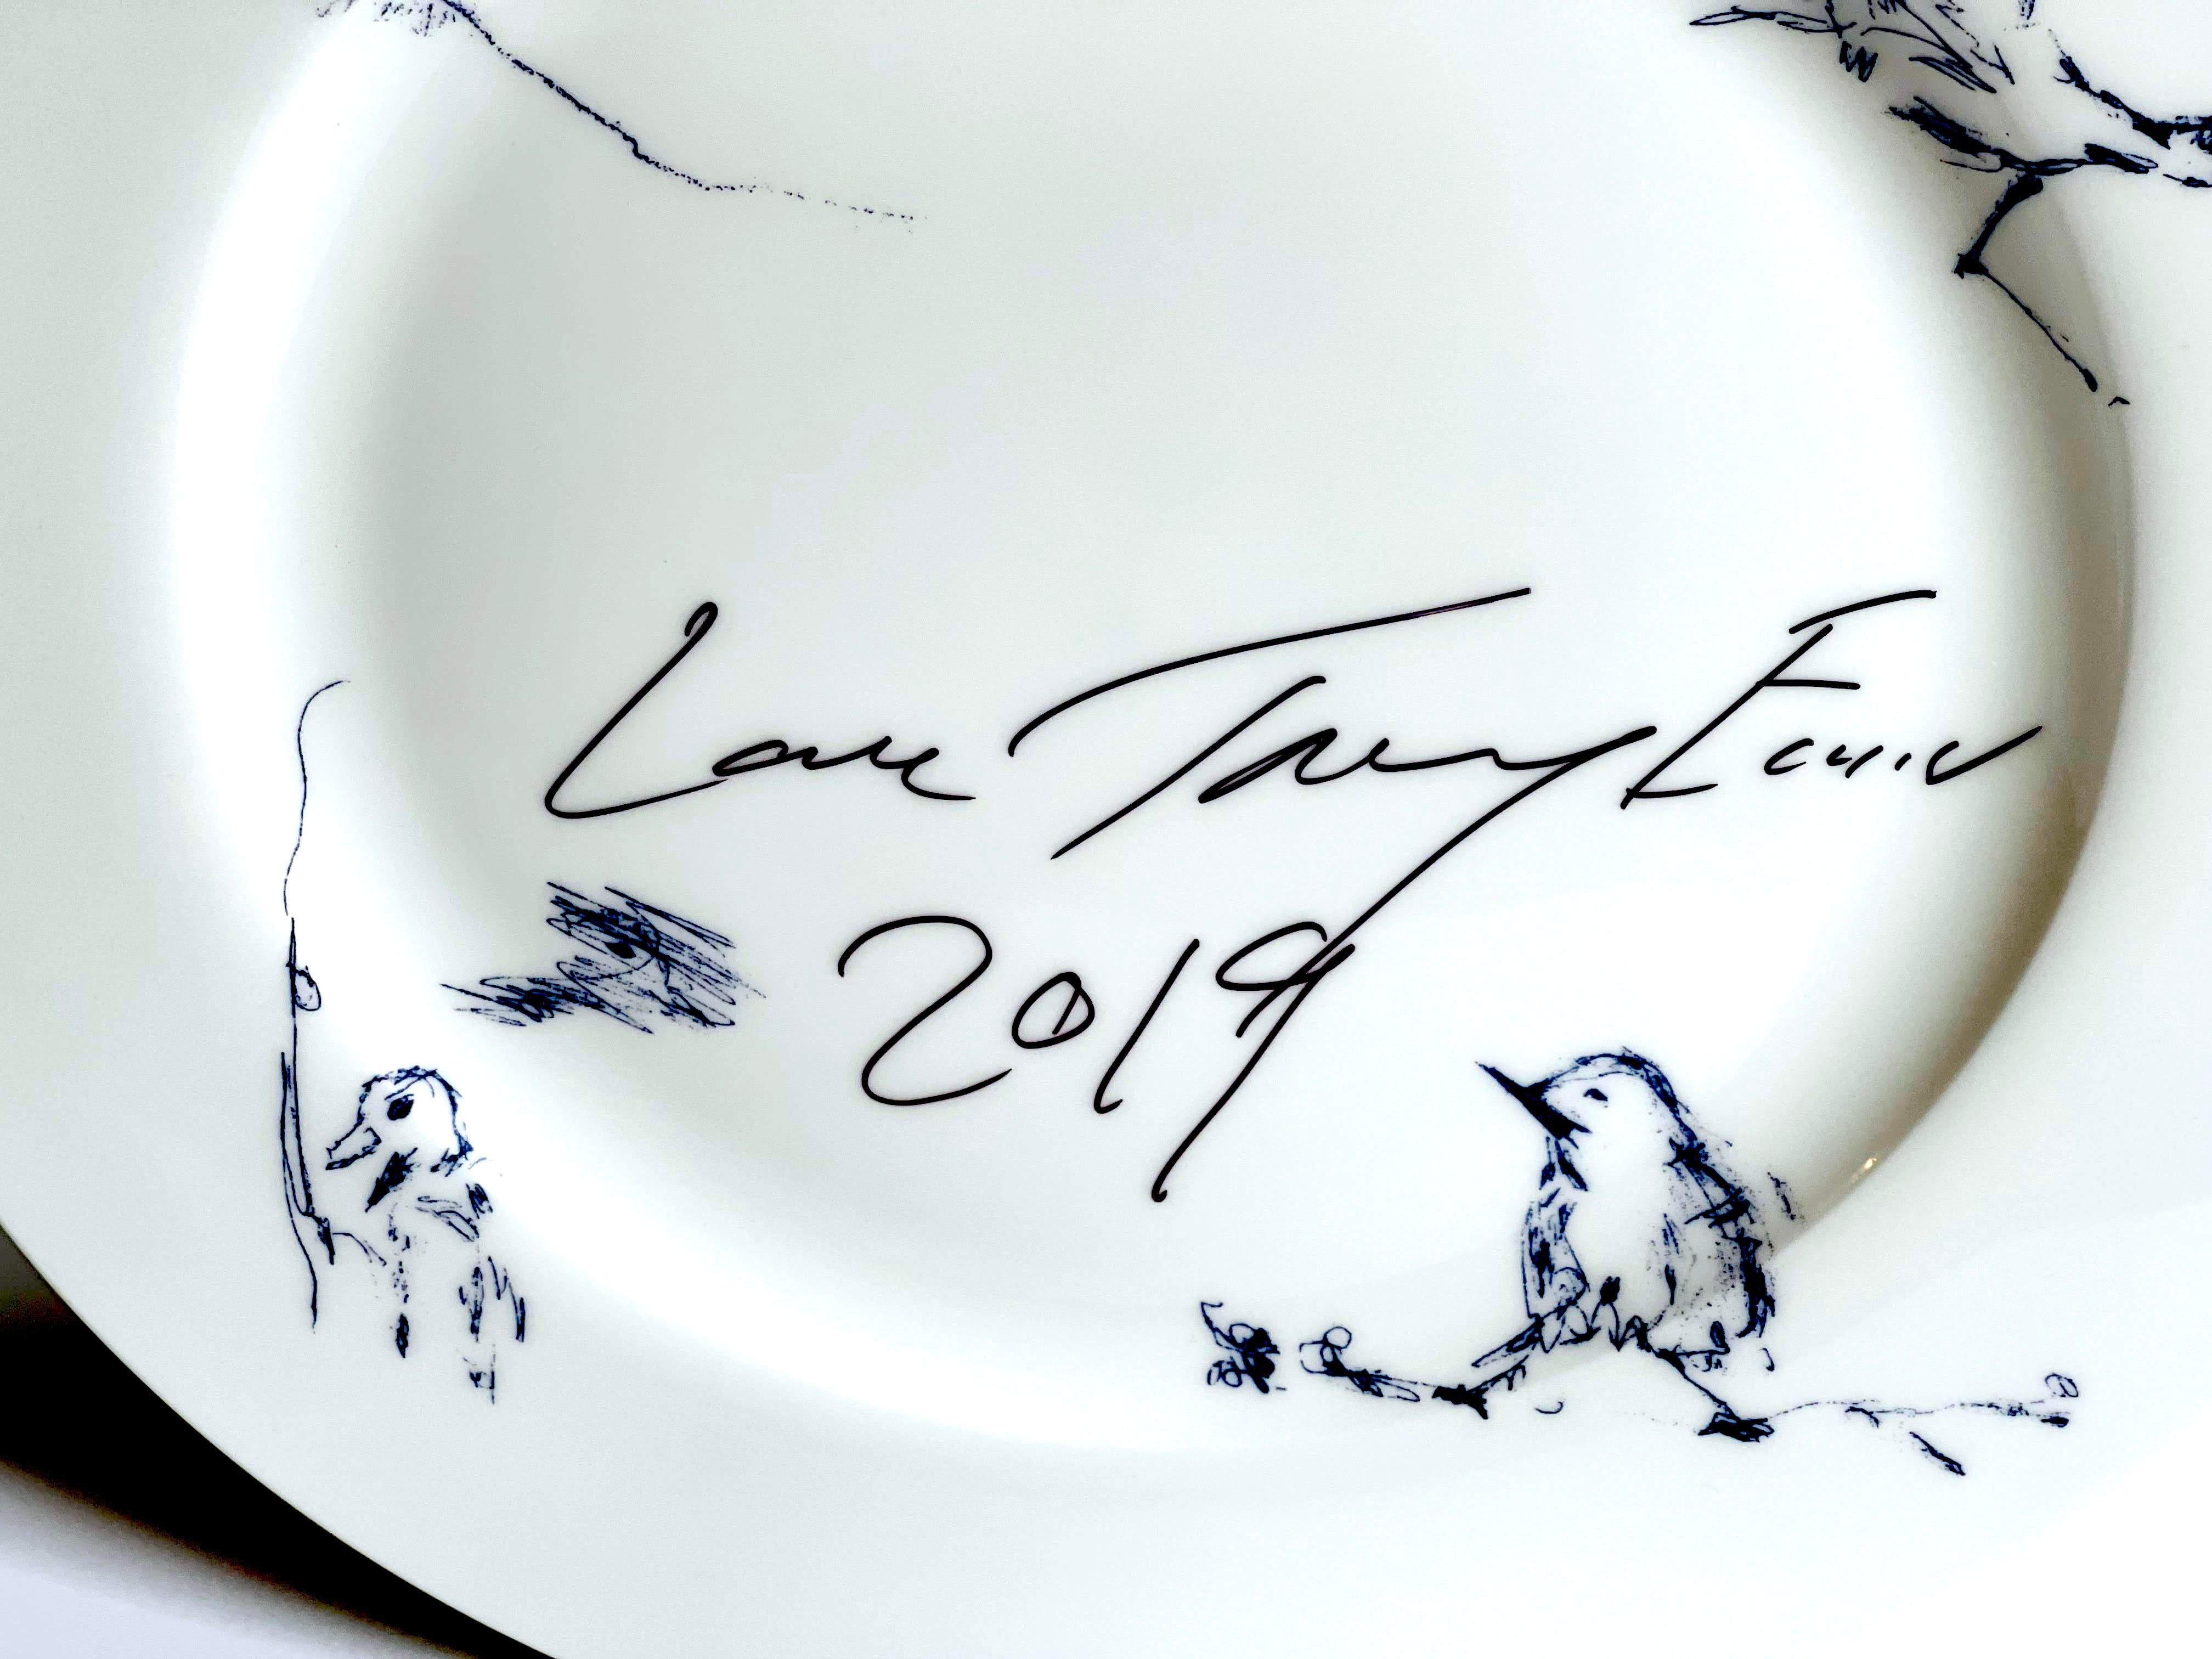 Tracey Emin
Docket and His Bird Collection'S Teller (einmalig handsigniert und beschriftet von Tracey Emin), 2019
Fine Bone China (Handsigniert, herzlich beschriftet und datiert)
Signiert und datiert von Tracey Emin: 